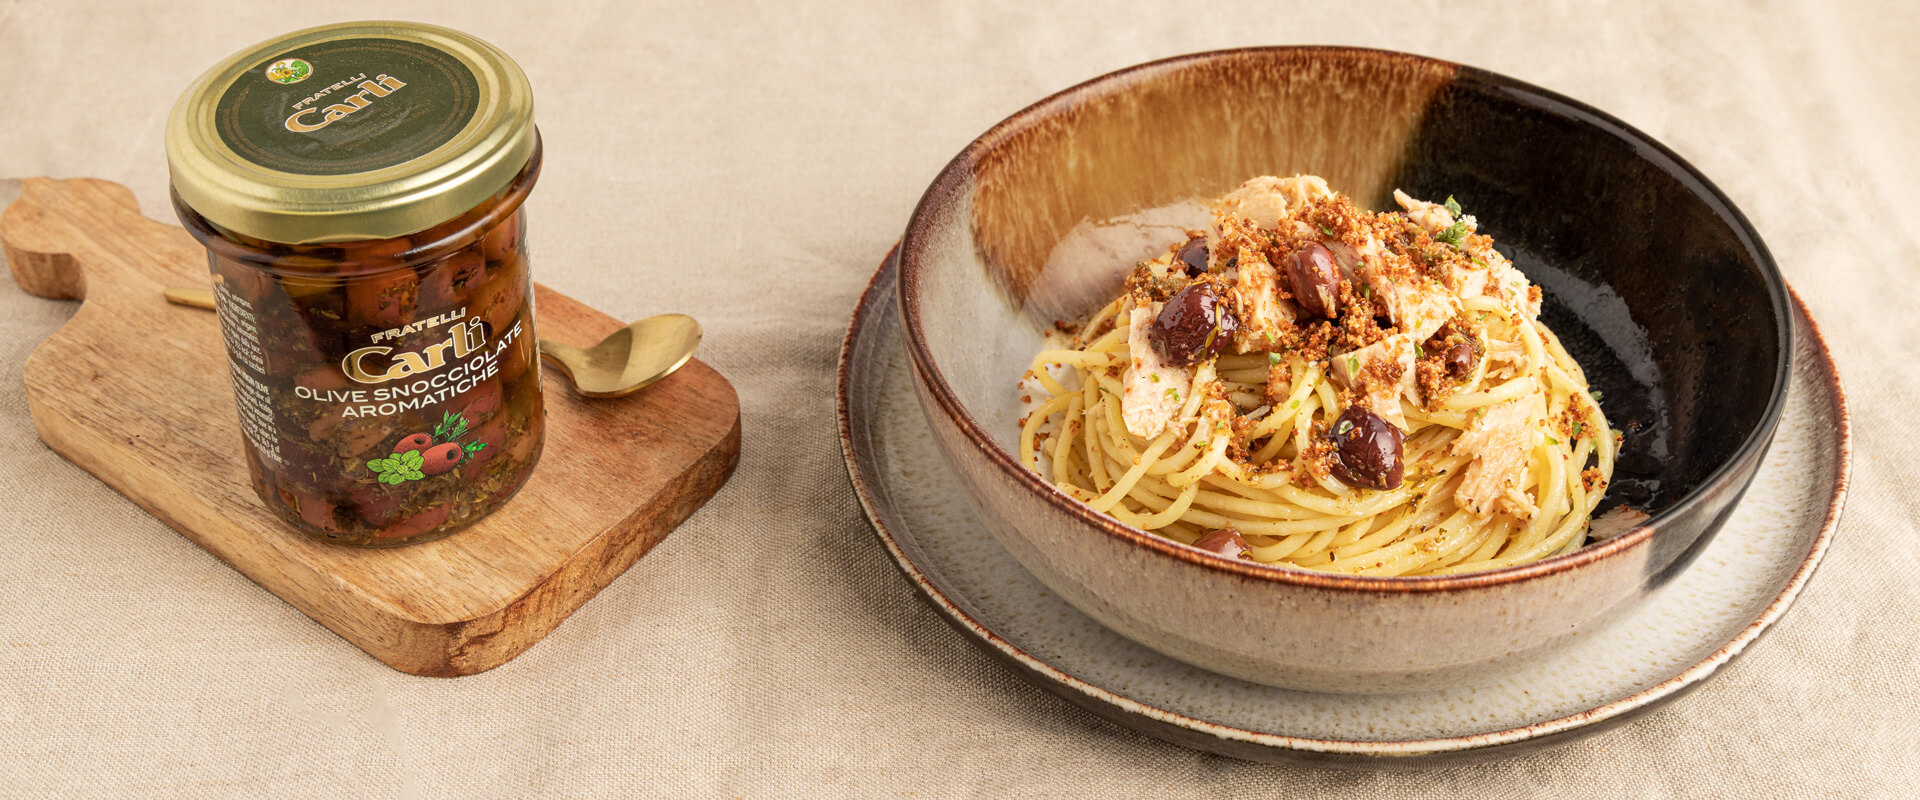 Spaghetti con Tonno e Olive Snocciolate Aromatiche